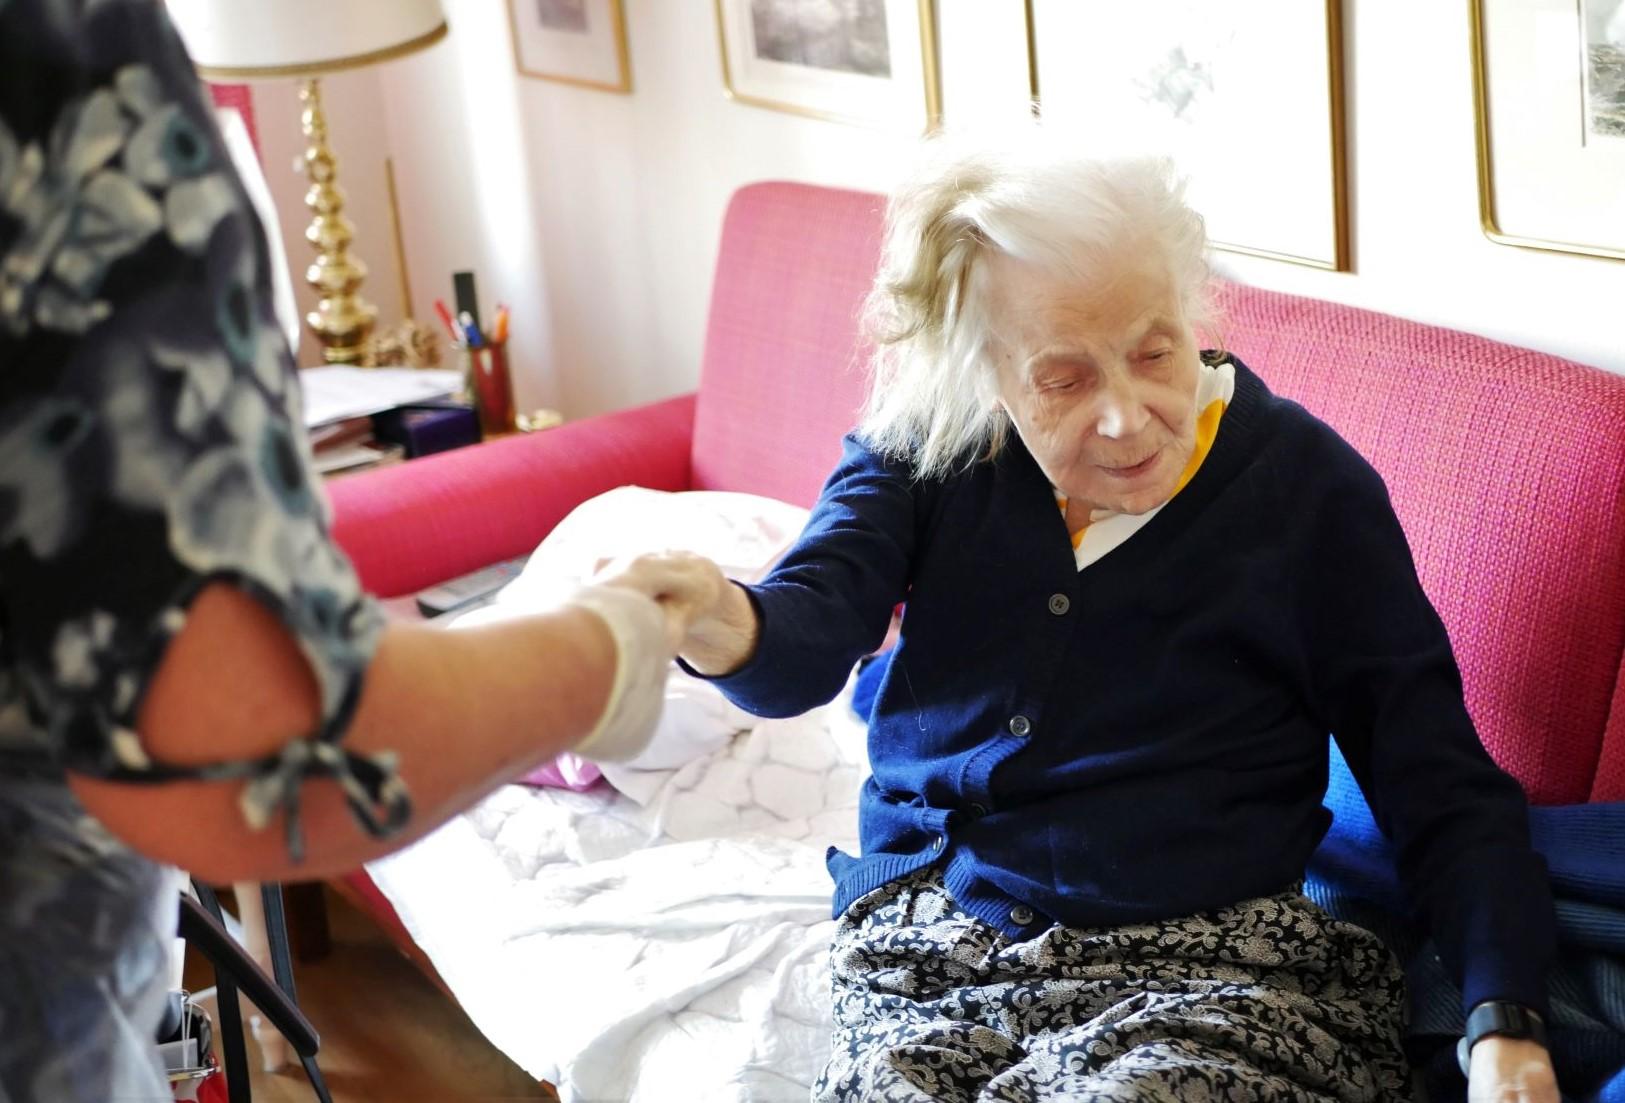 Vårdare håller i äldre persons hand och drar upp henne ur sängen